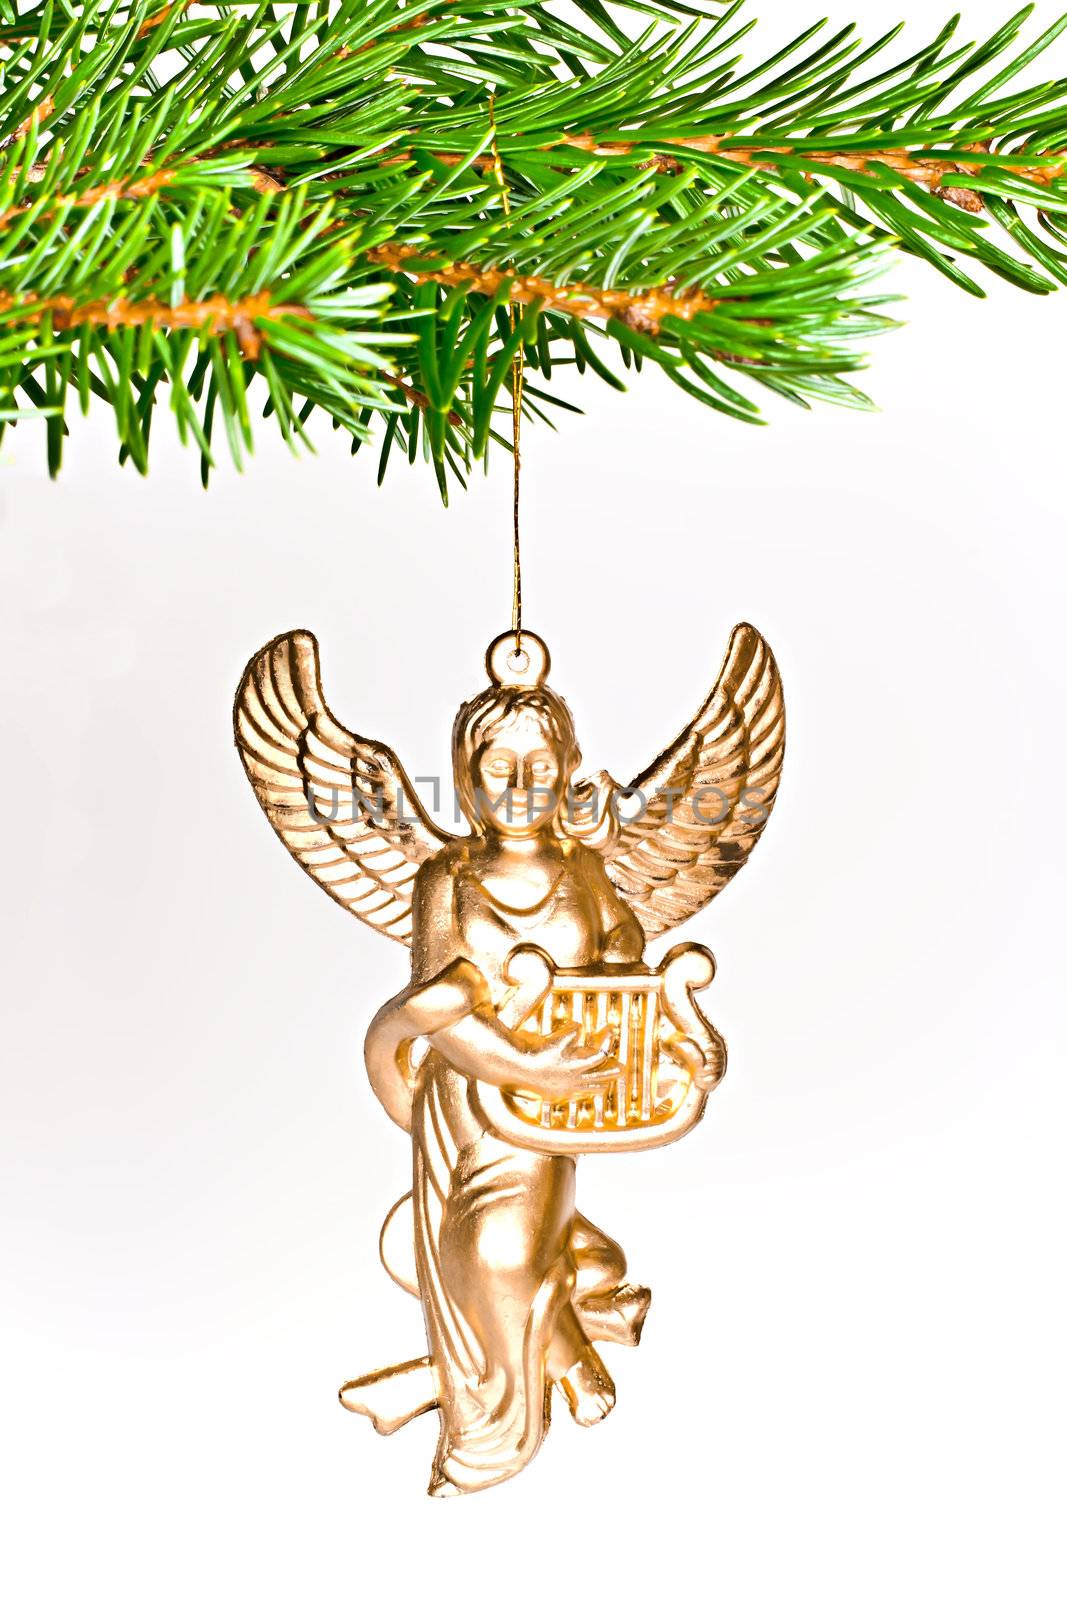 Angel Christmas. by gitusik